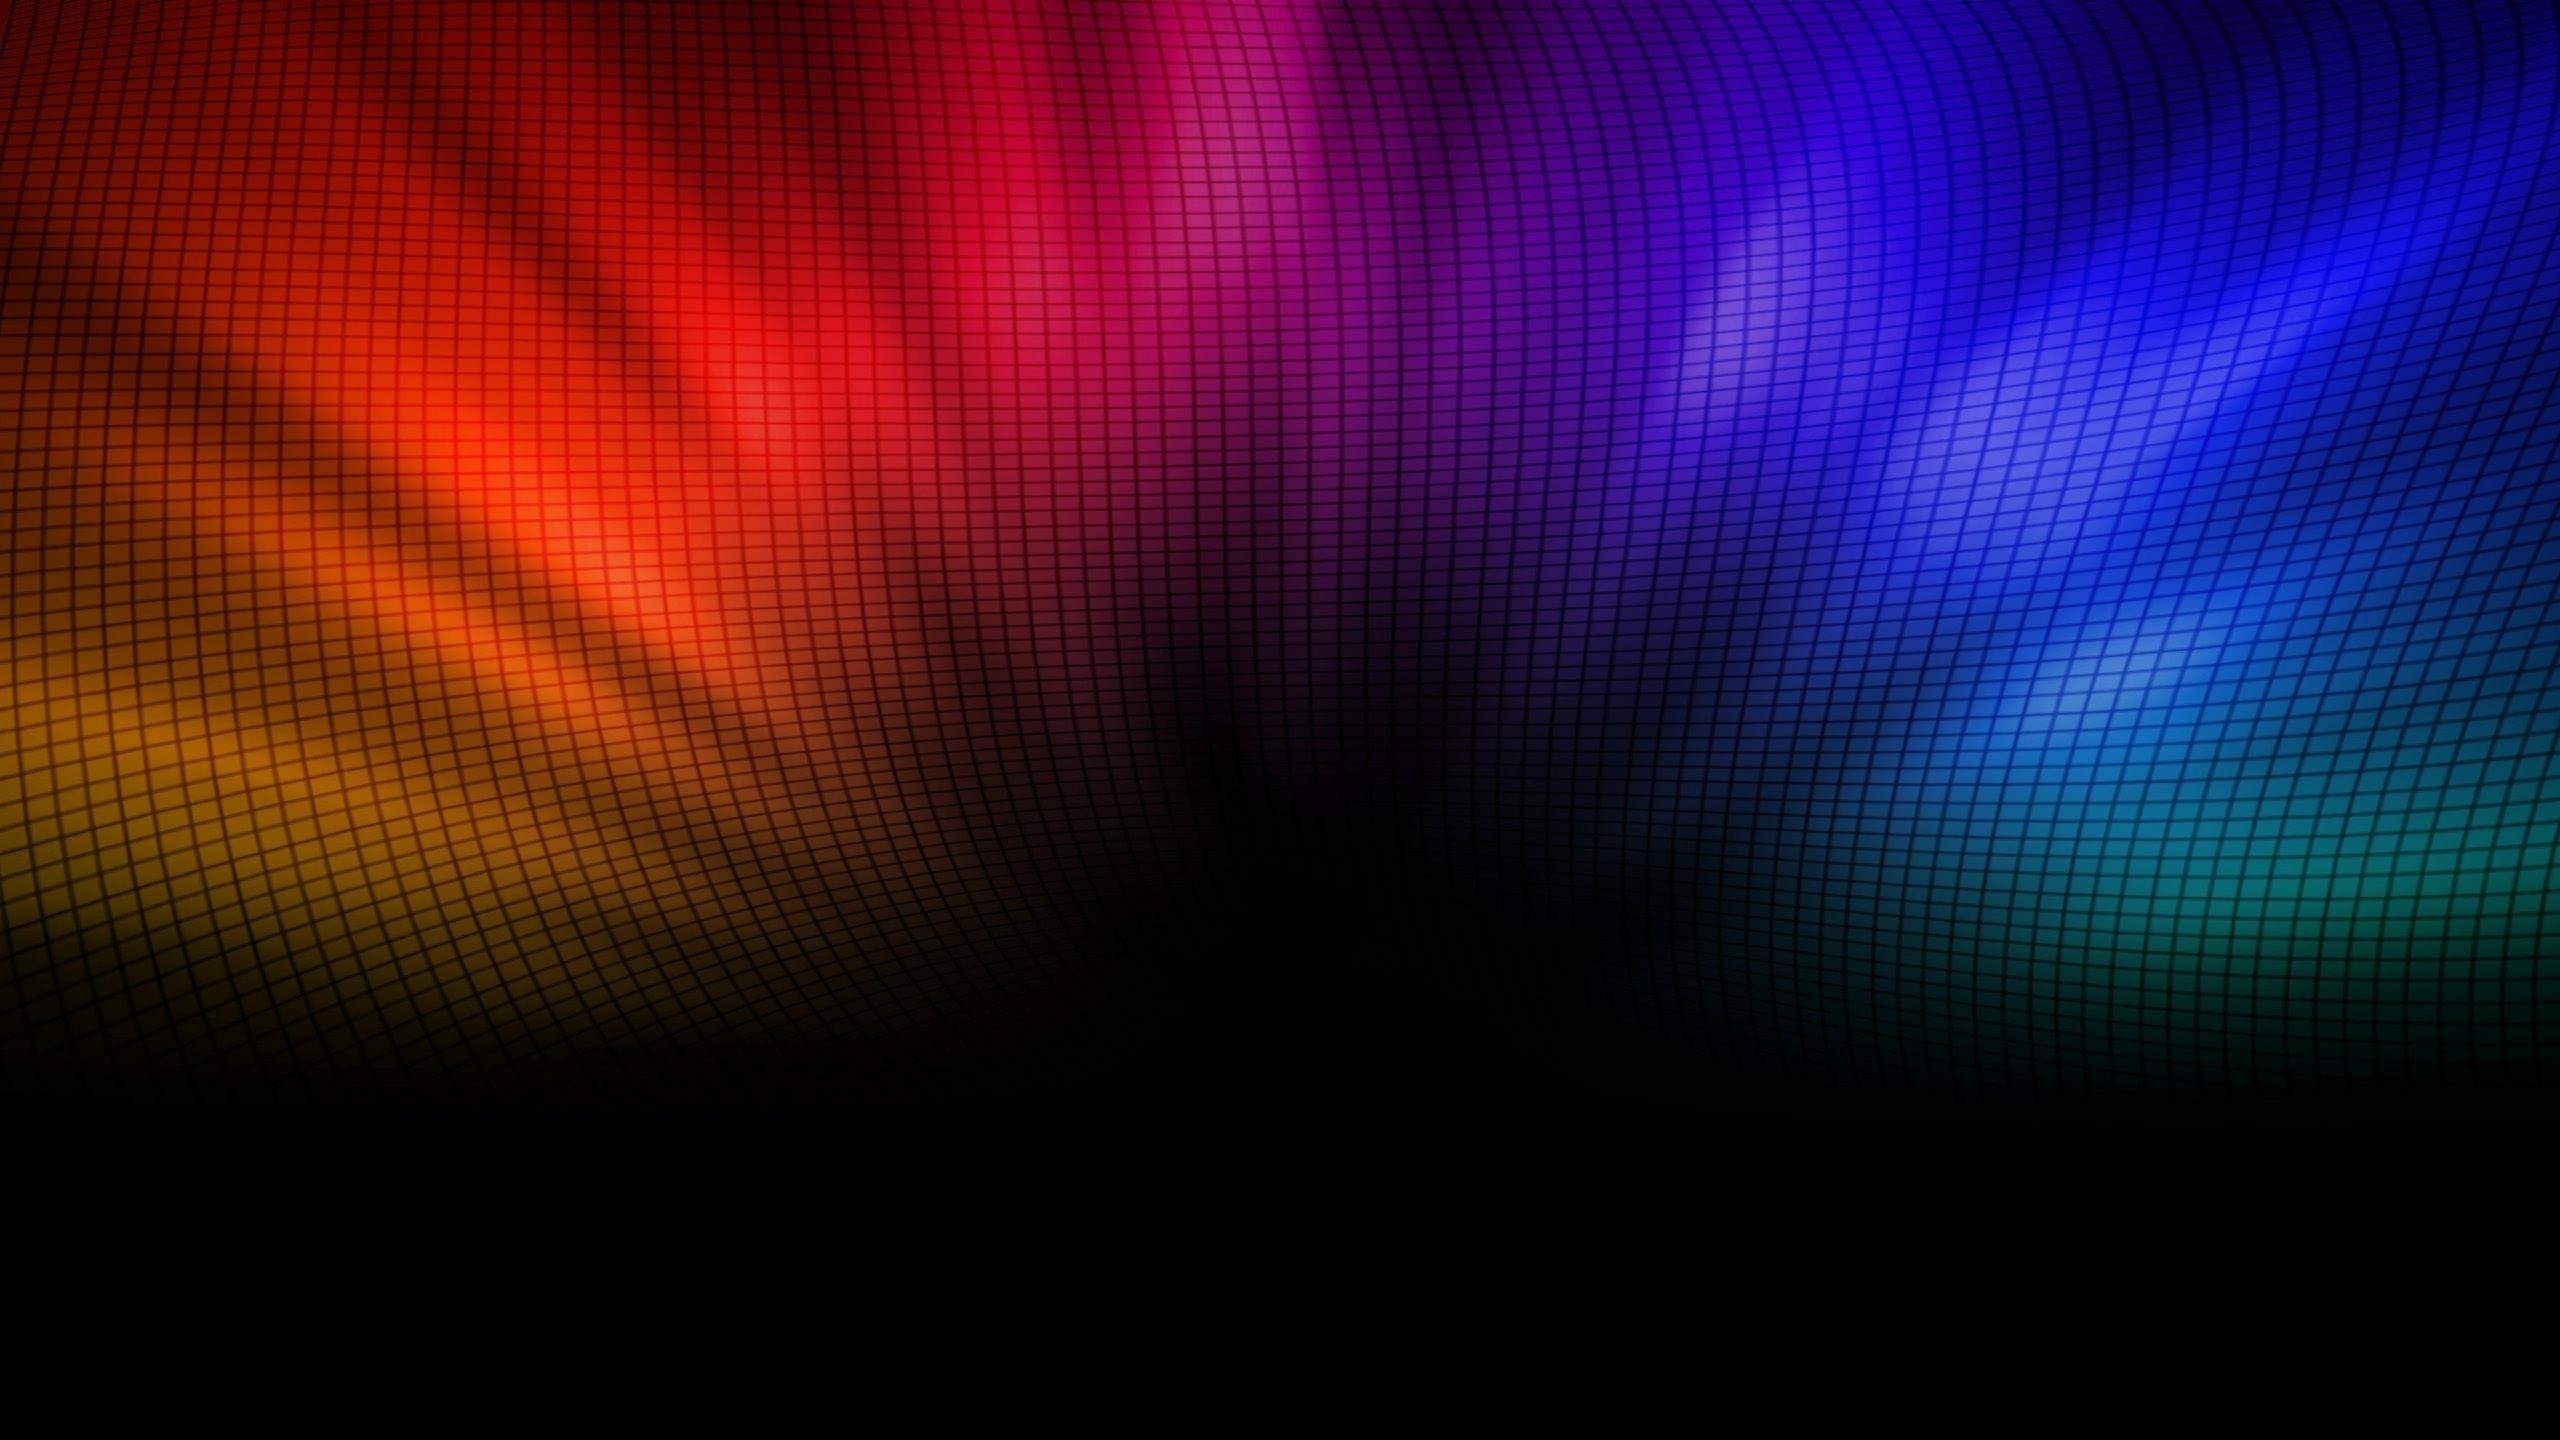 Colorful Backgrounds free download  PixelsTalkNet